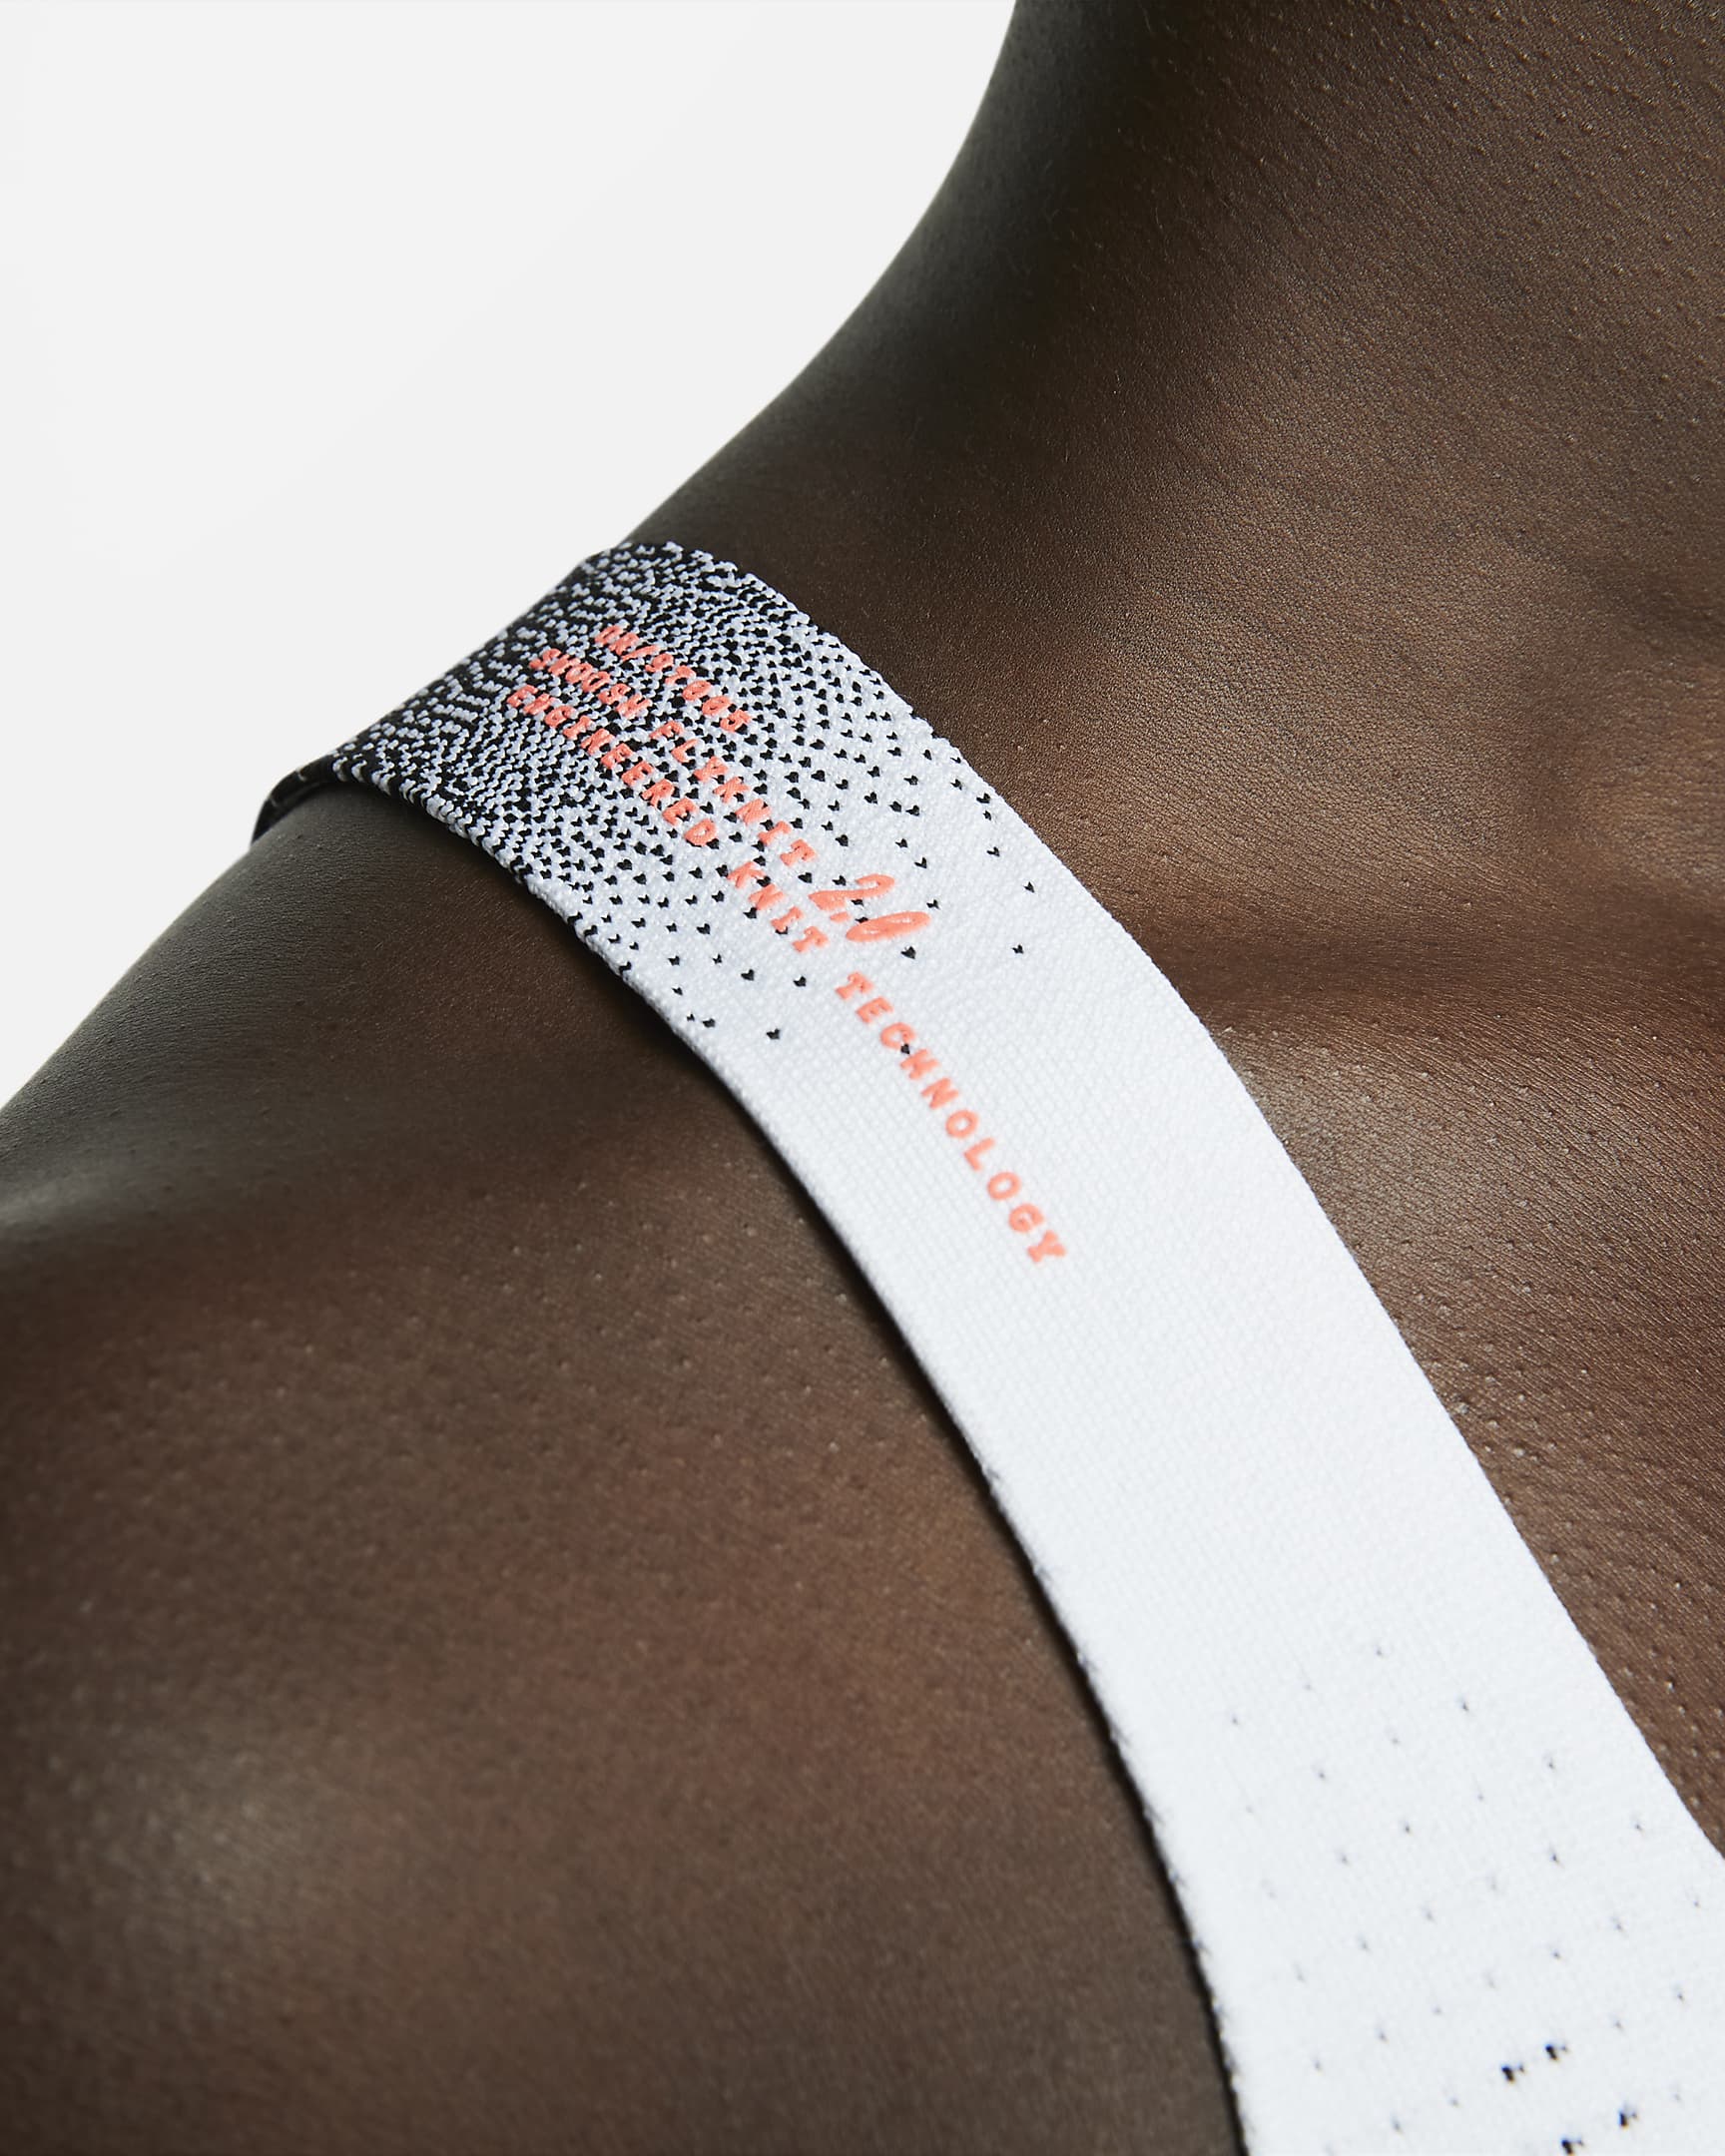 Brassière de sport non rembourrée à maintien supérieur Nike Swoosh Flyknit pour femme - Noir/Blanc/Bright Crimson